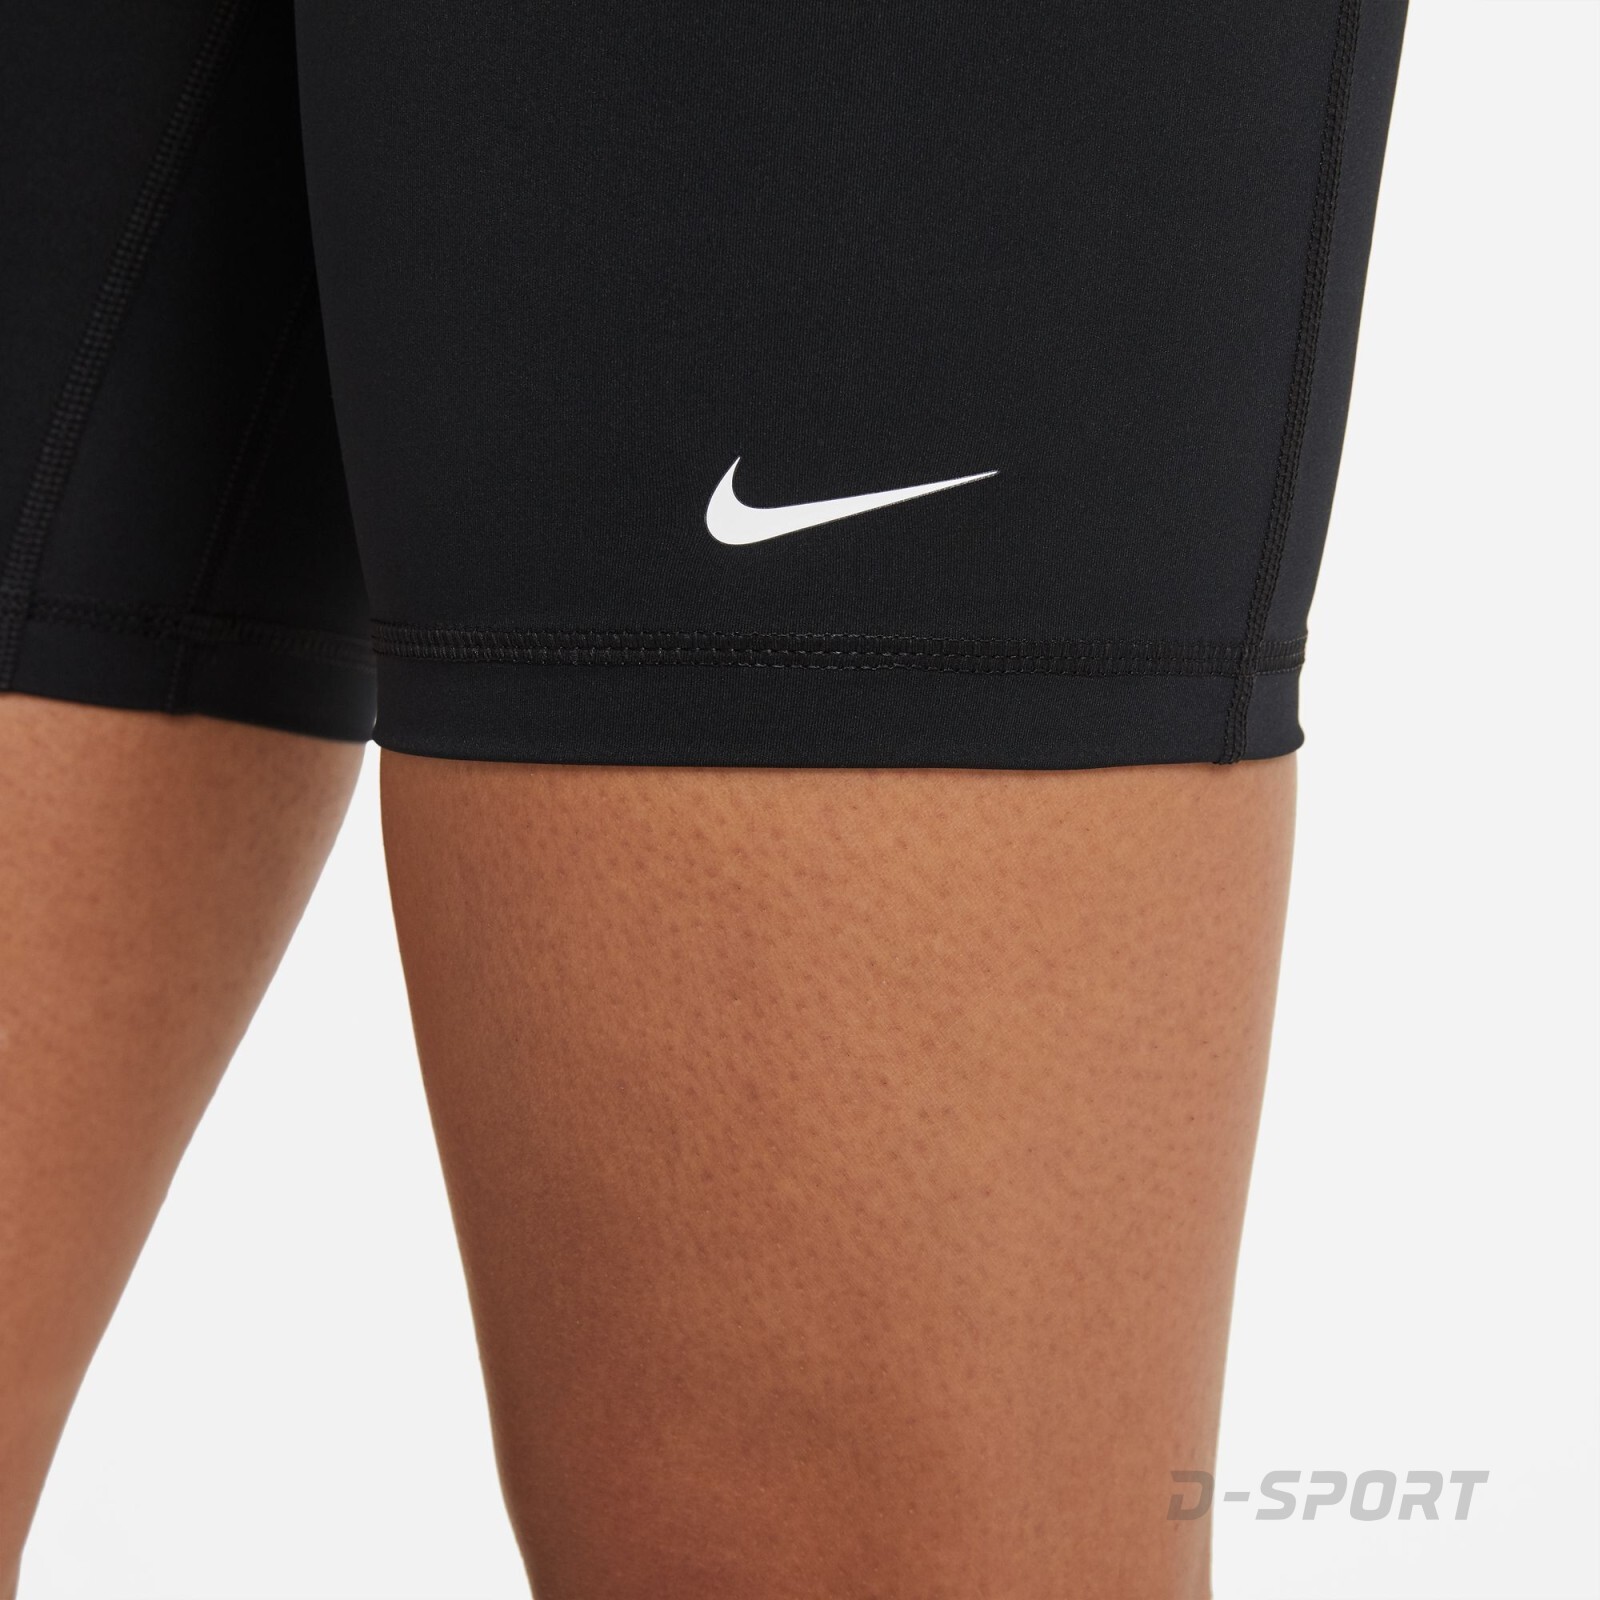 Nike Pro 365